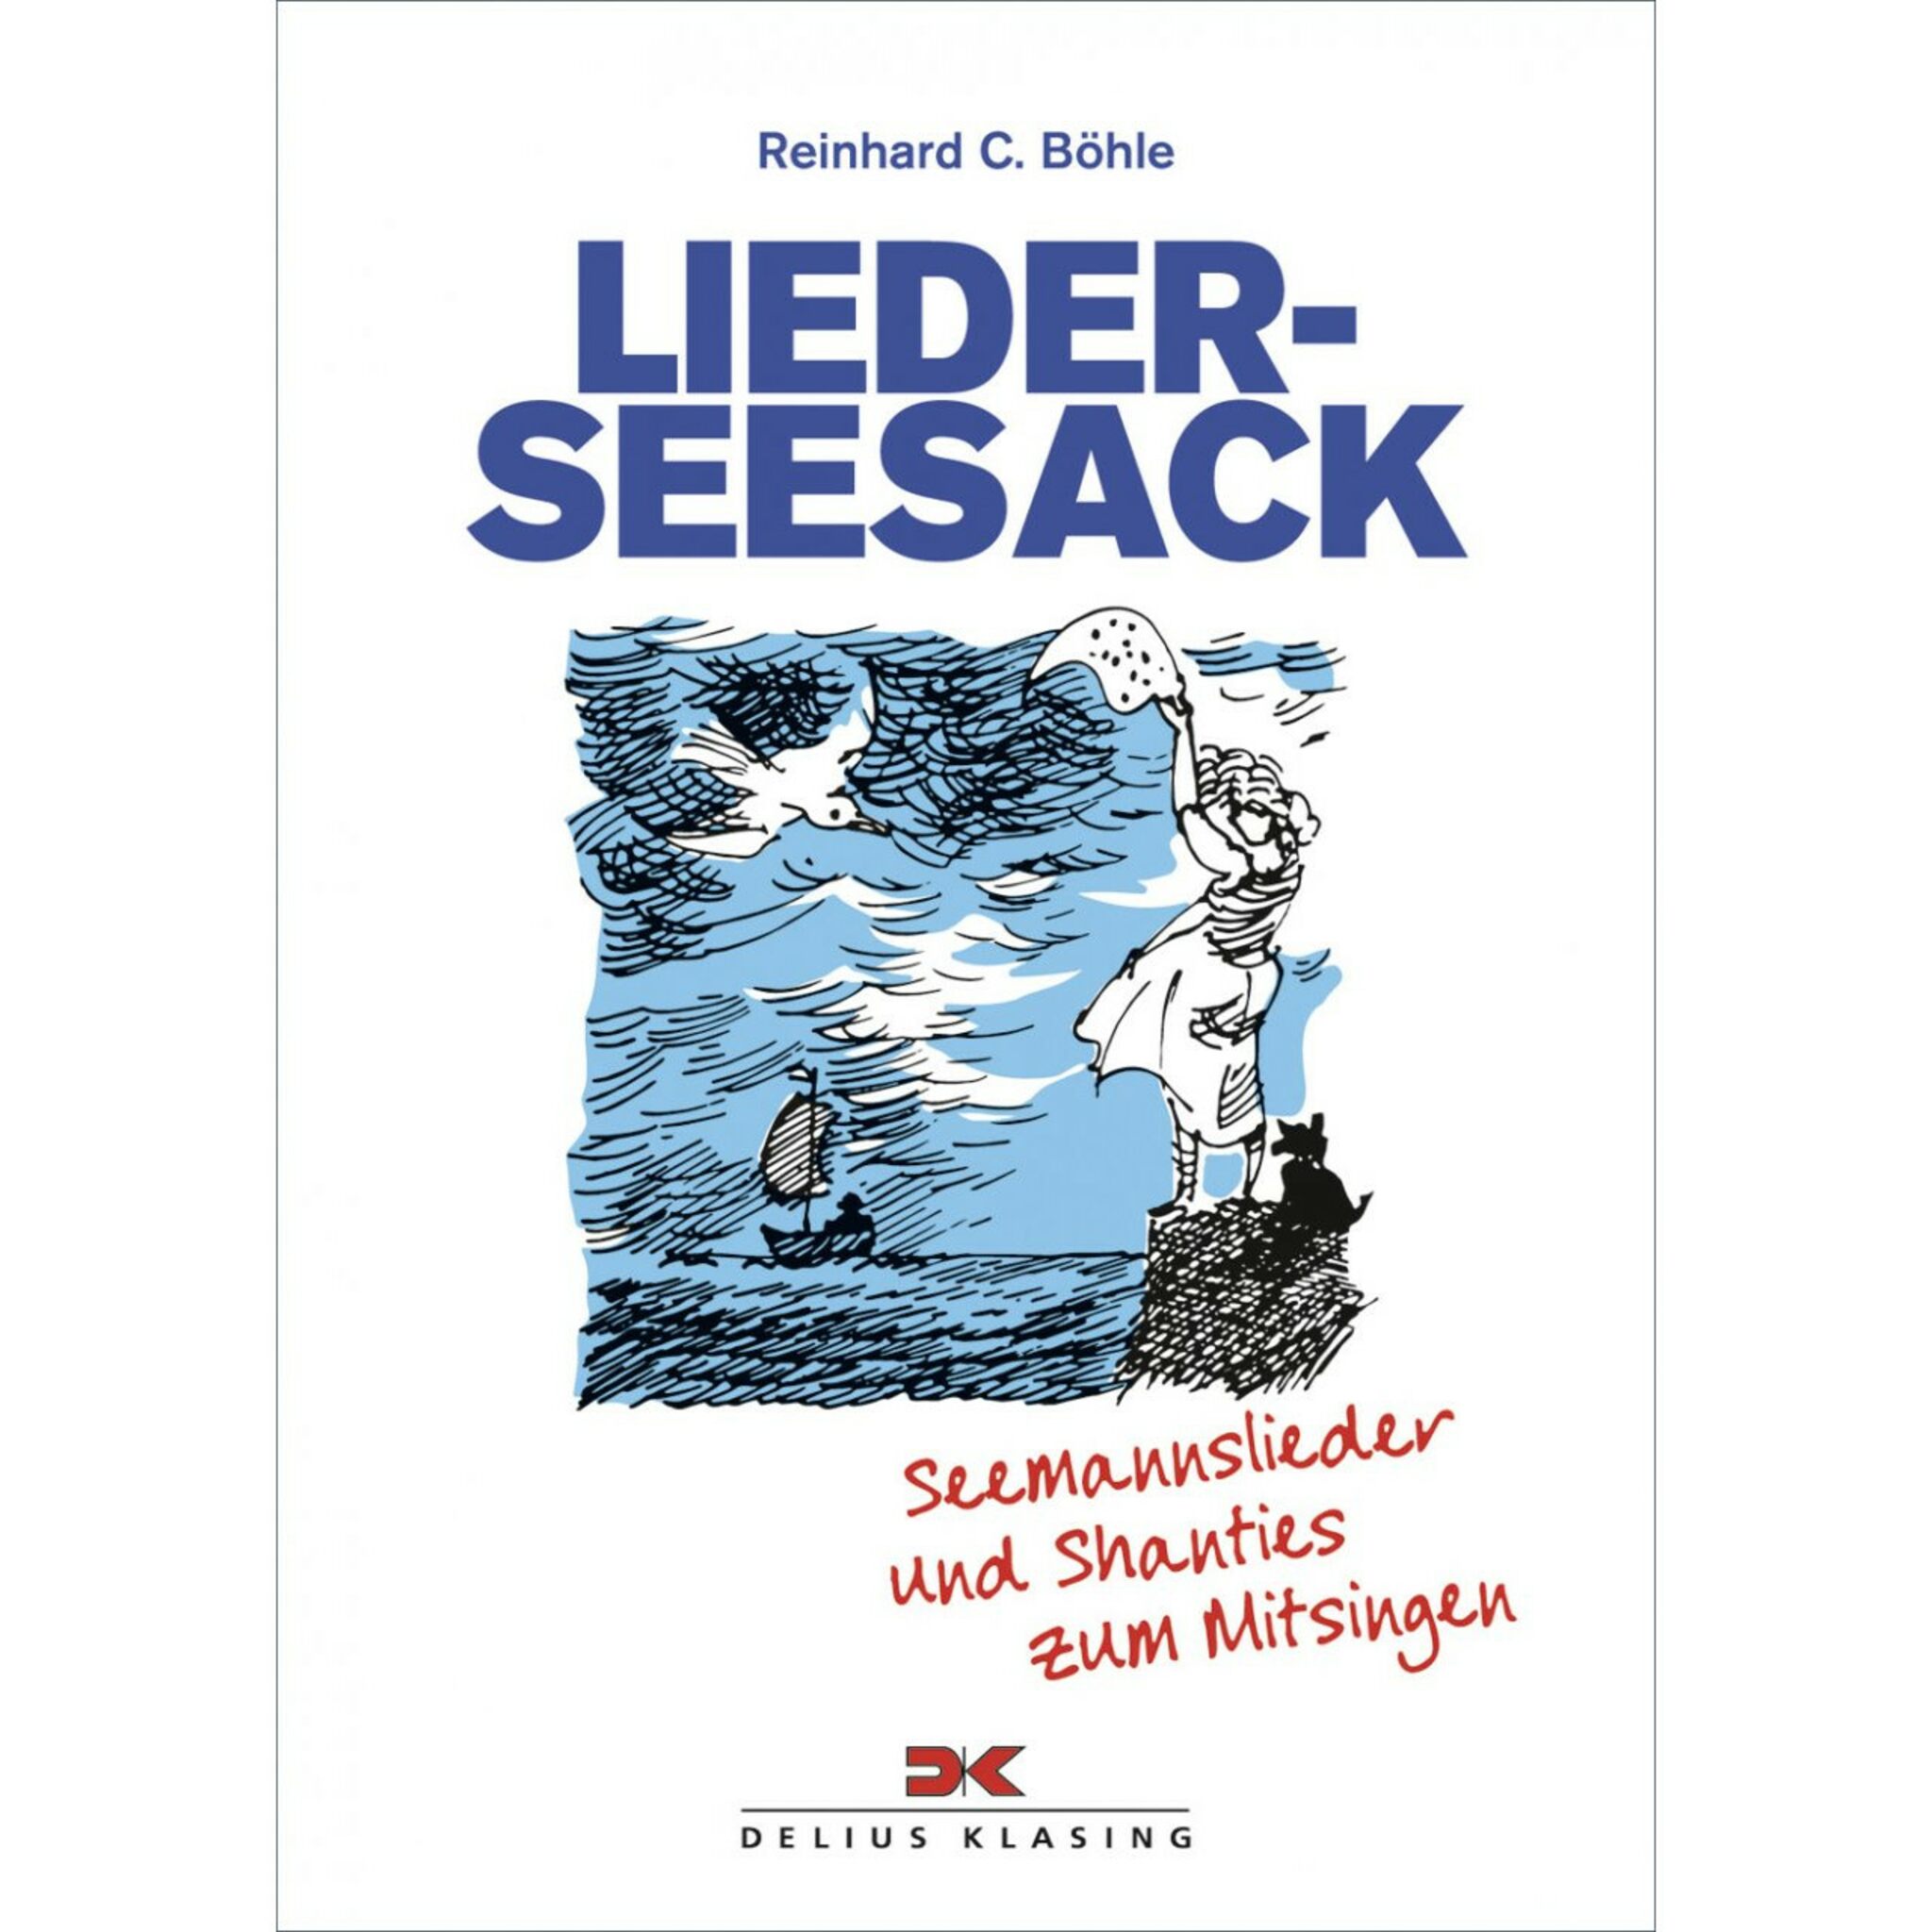 Delius Klasing LIEDER-SEESACK Seemannslieder und Shanties zum Mitsingen